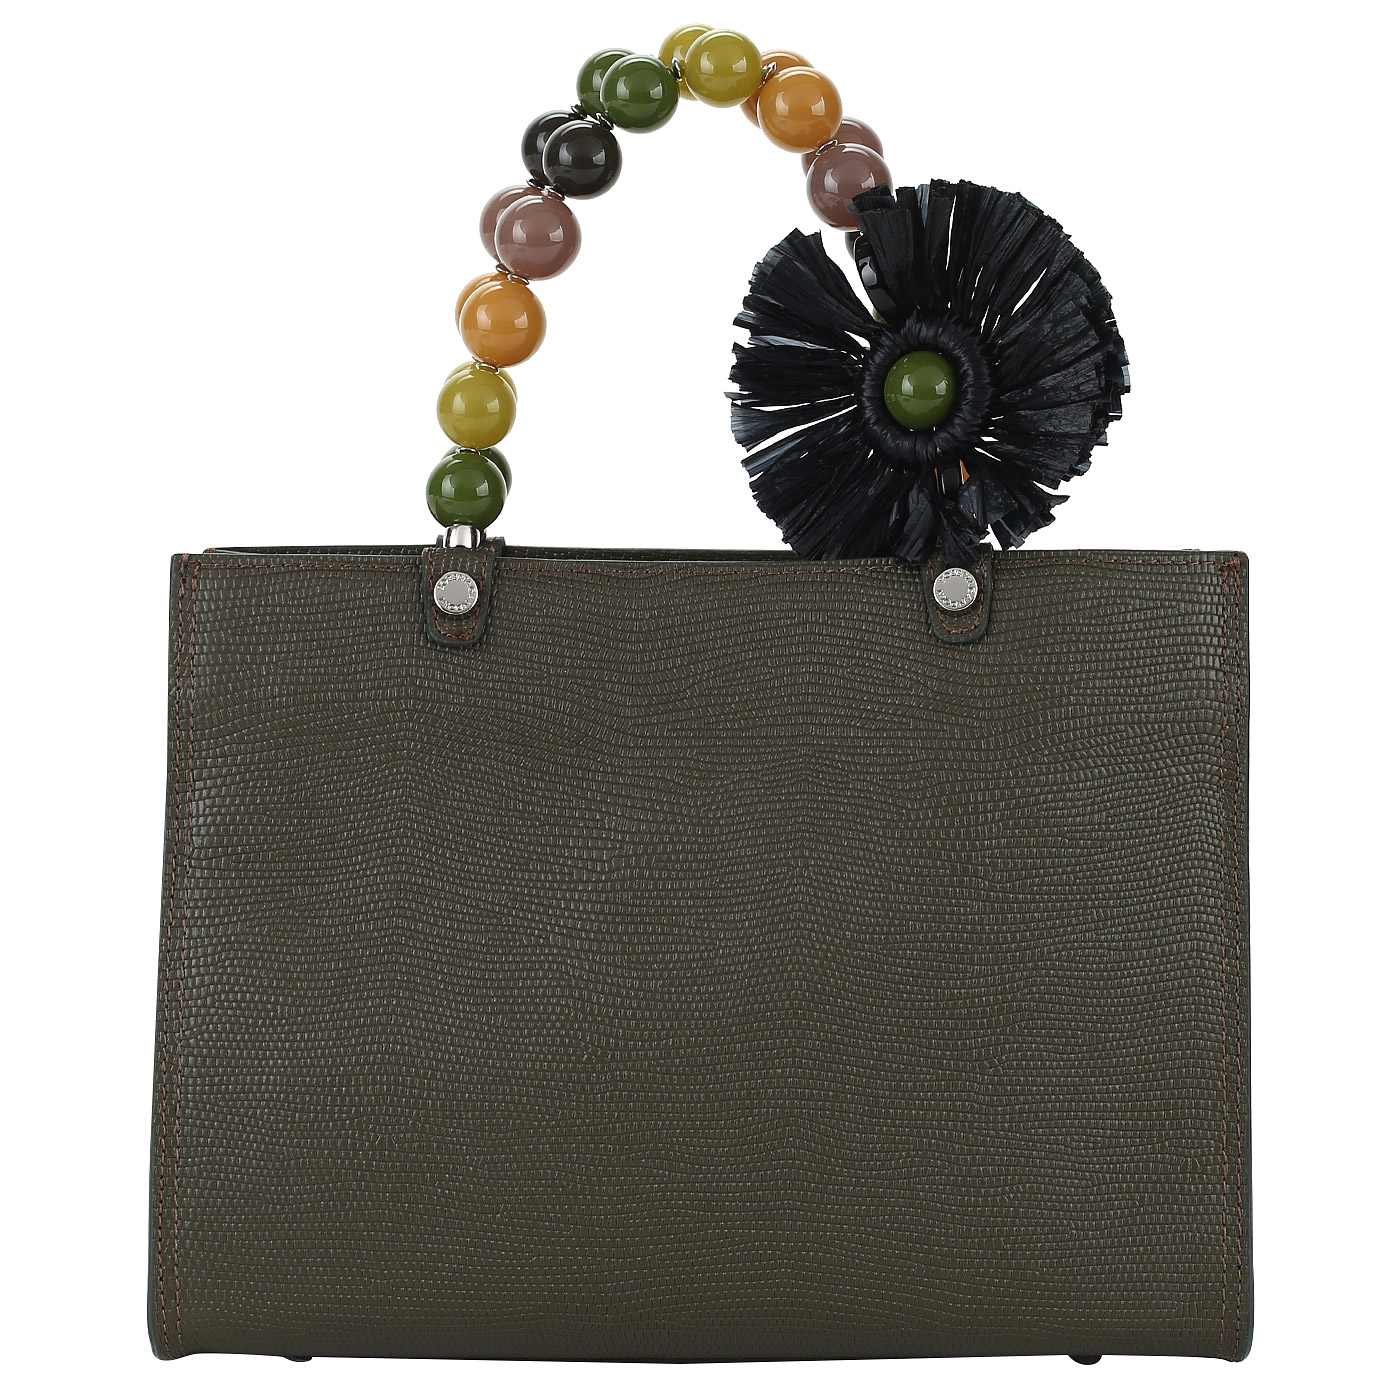 Roberta Gandolfi Женская кожаная сумочка с декоративными ручками